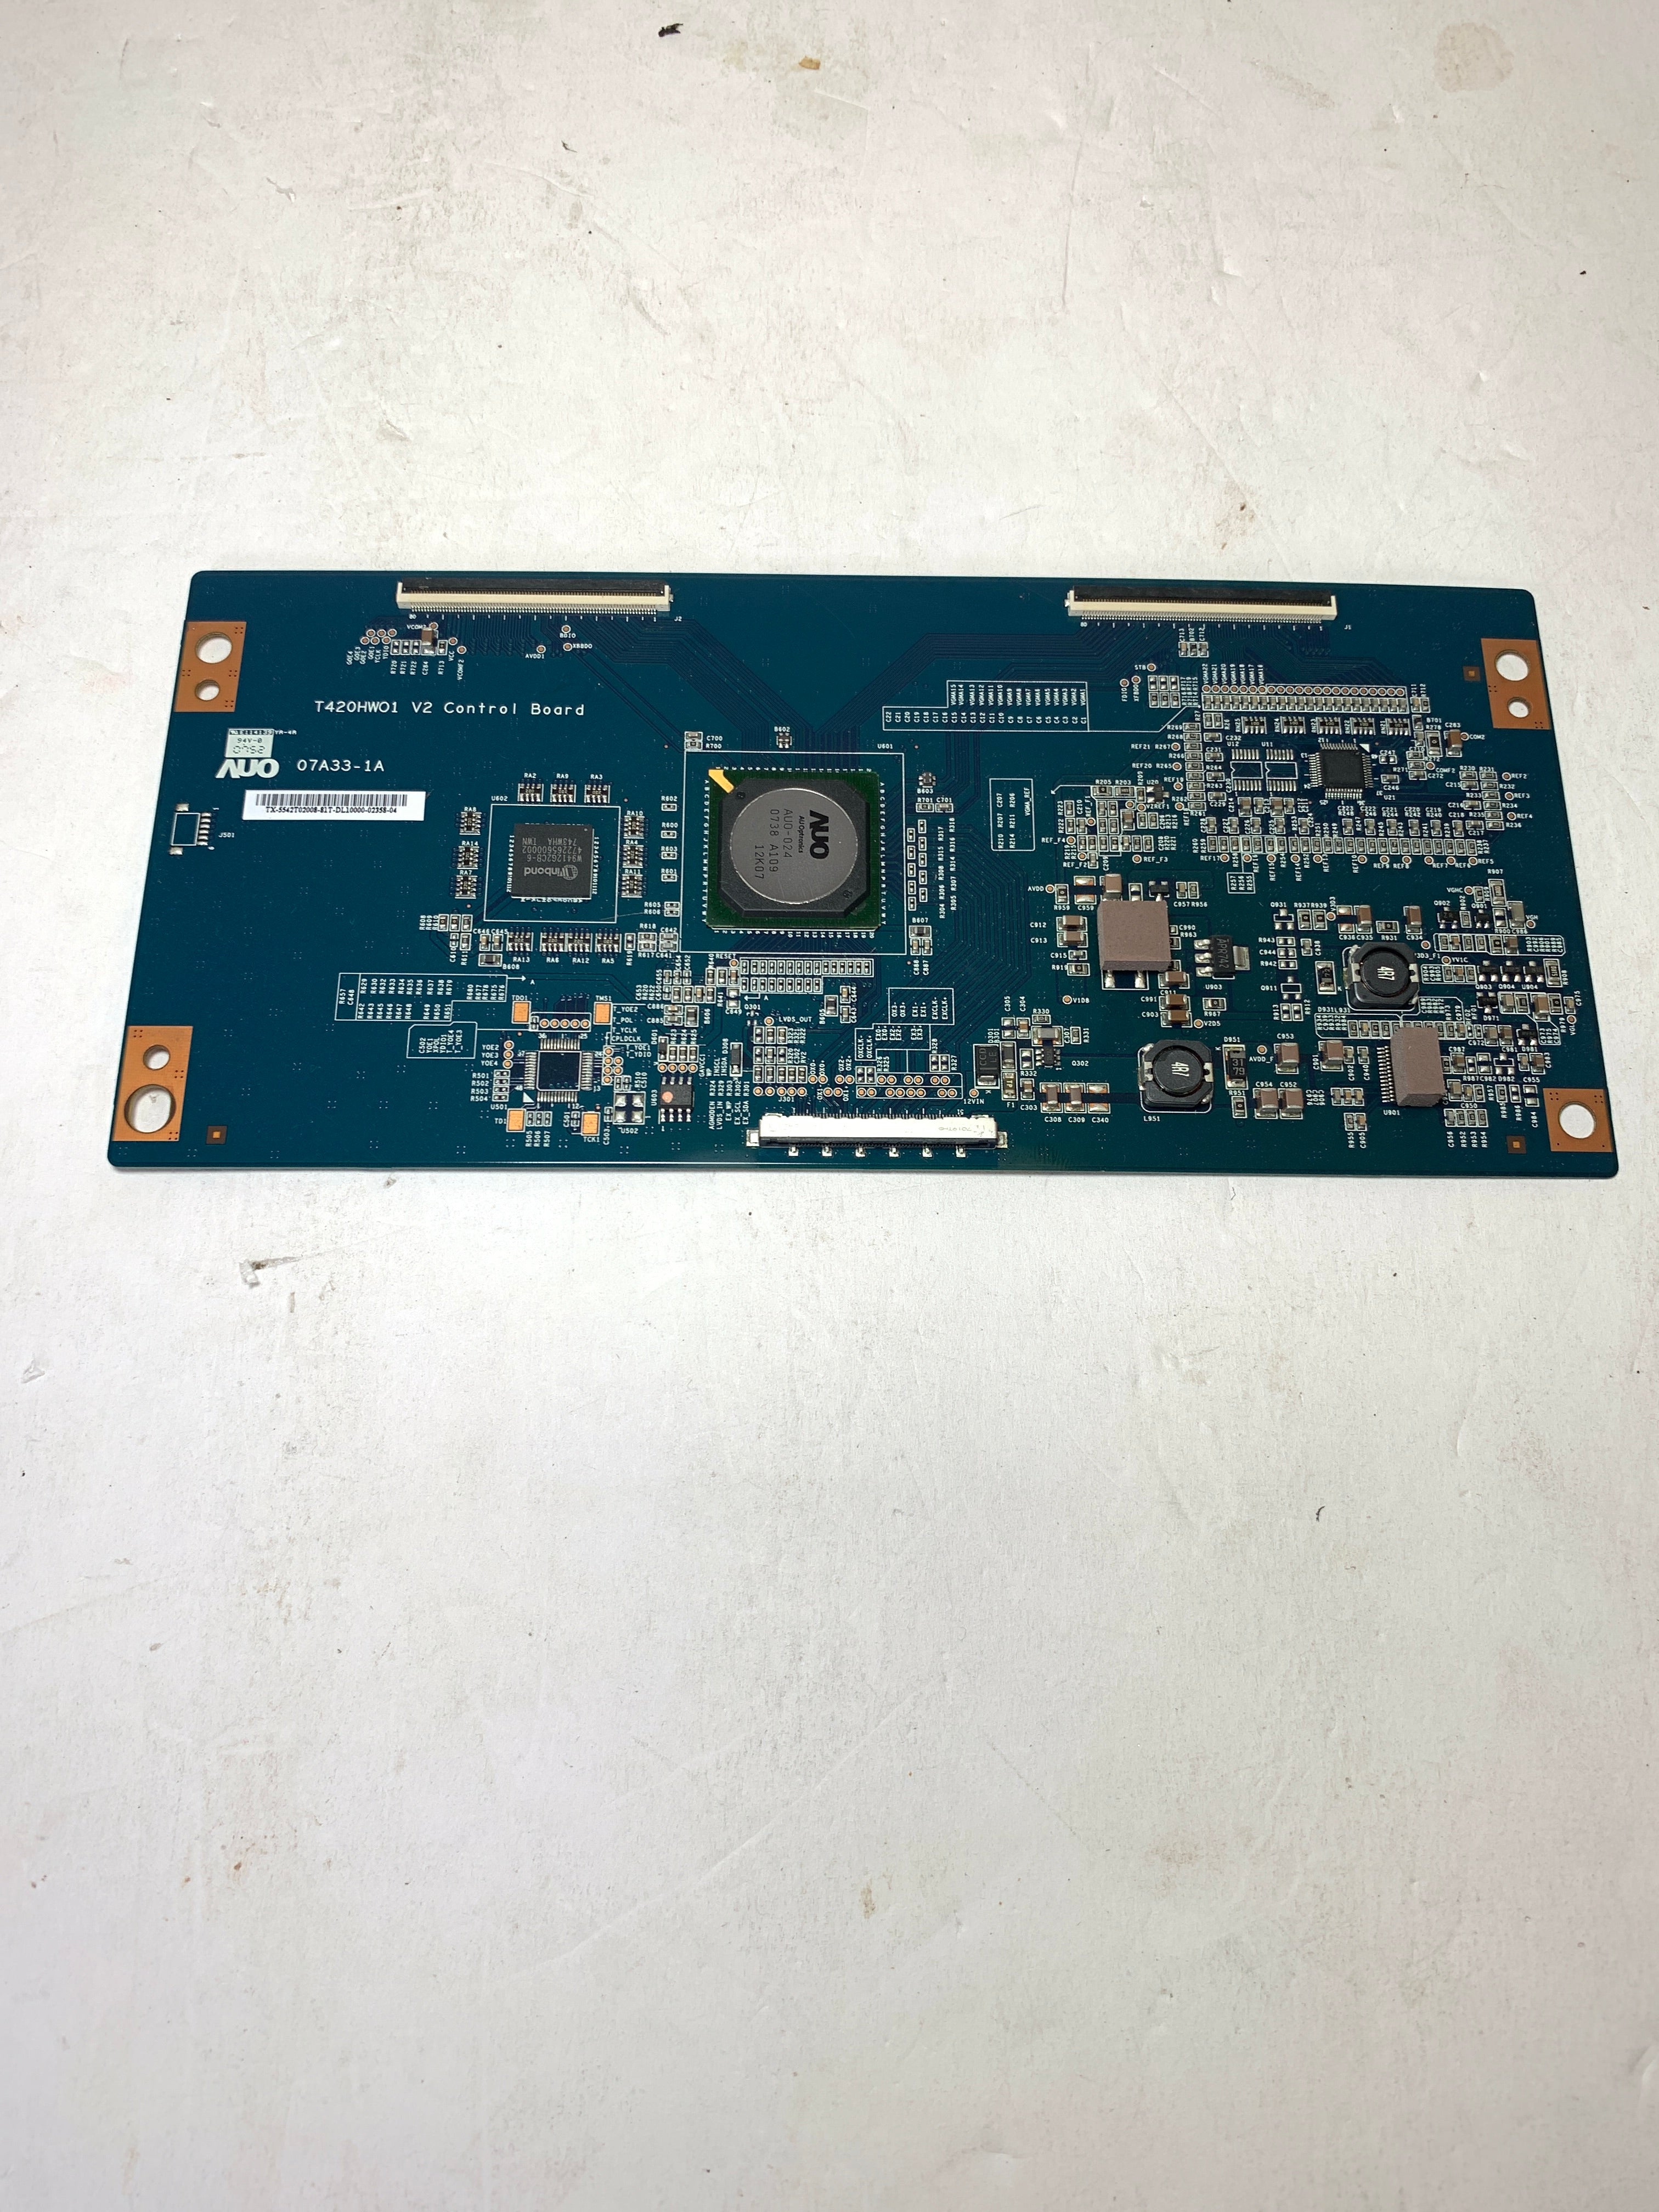 Philips 996510006936 (T420HW01 V2, 07A33-1A) T-Con Board